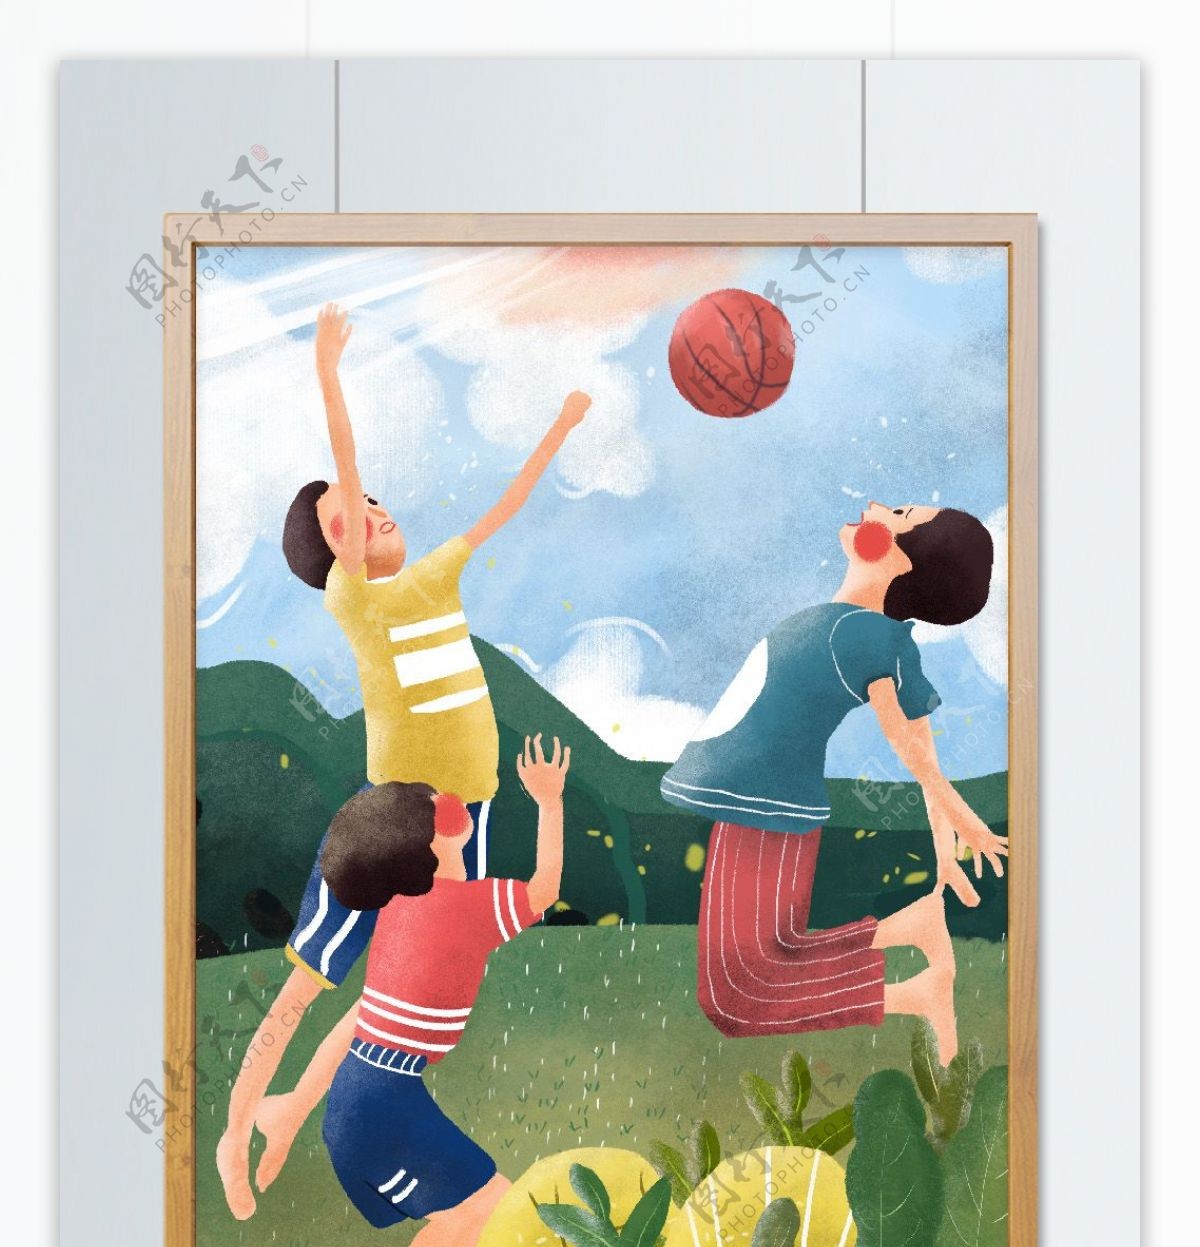 儿童节儿童在草地上玩篮球原创插画